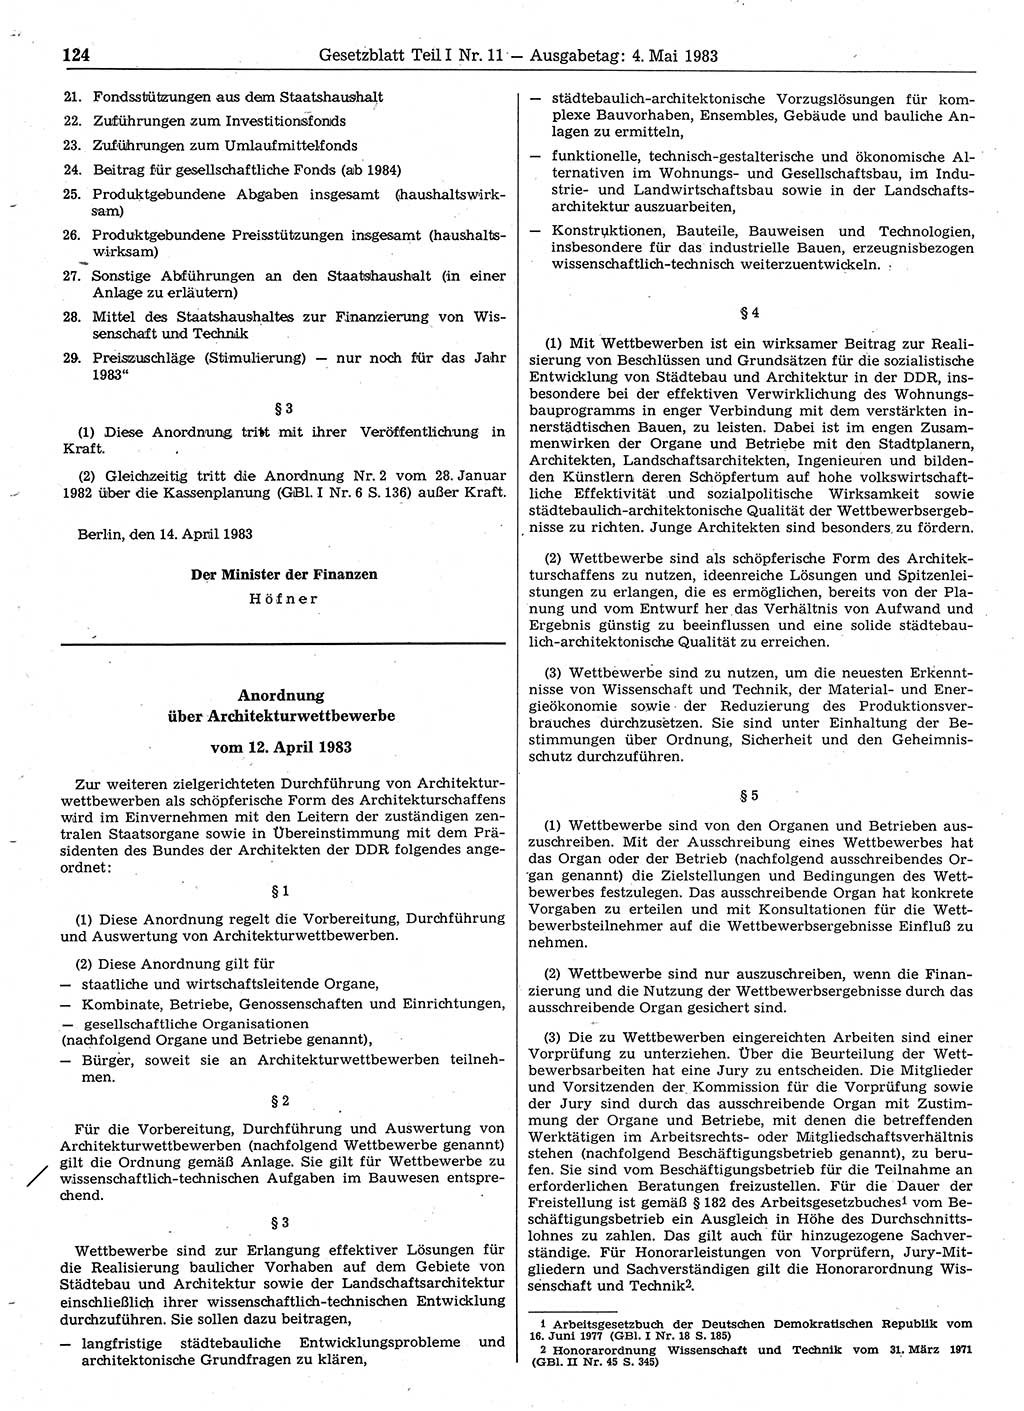 Gesetzblatt (GBl.) der Deutschen Demokratischen Republik (DDR) Teil Ⅰ 1983, Seite 124 (GBl. DDR Ⅰ 1983, S. 124)